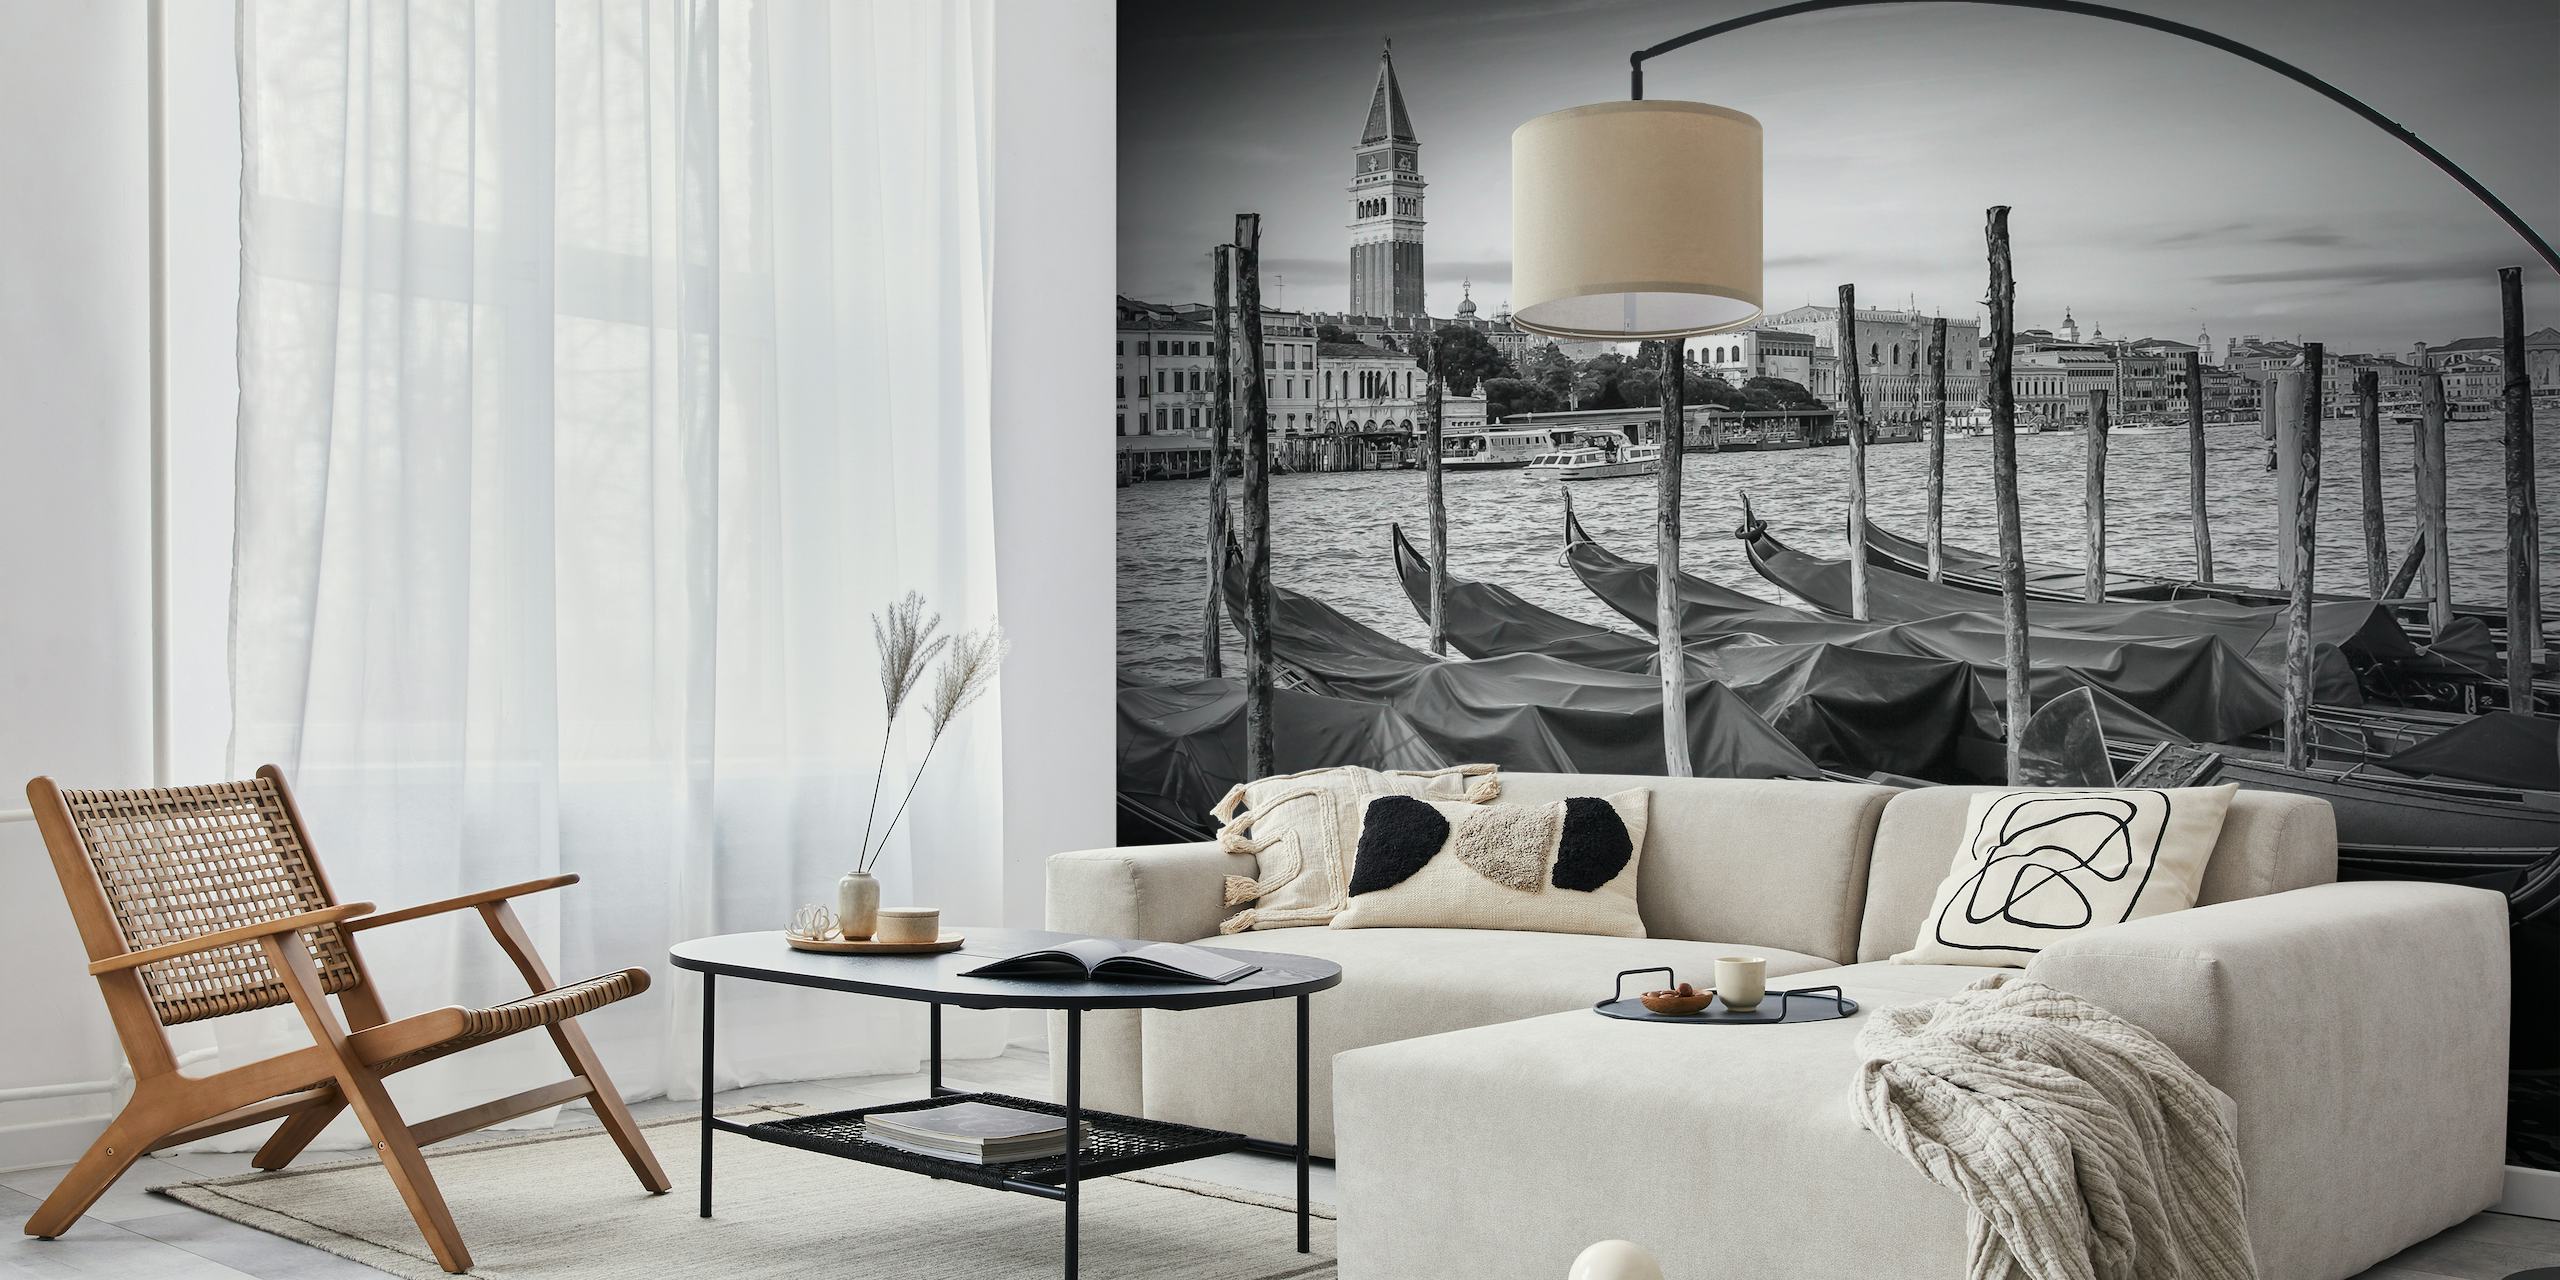 Carta da parati in bianco e nero del Canal Grande di Venezia con gondole e architettura storica